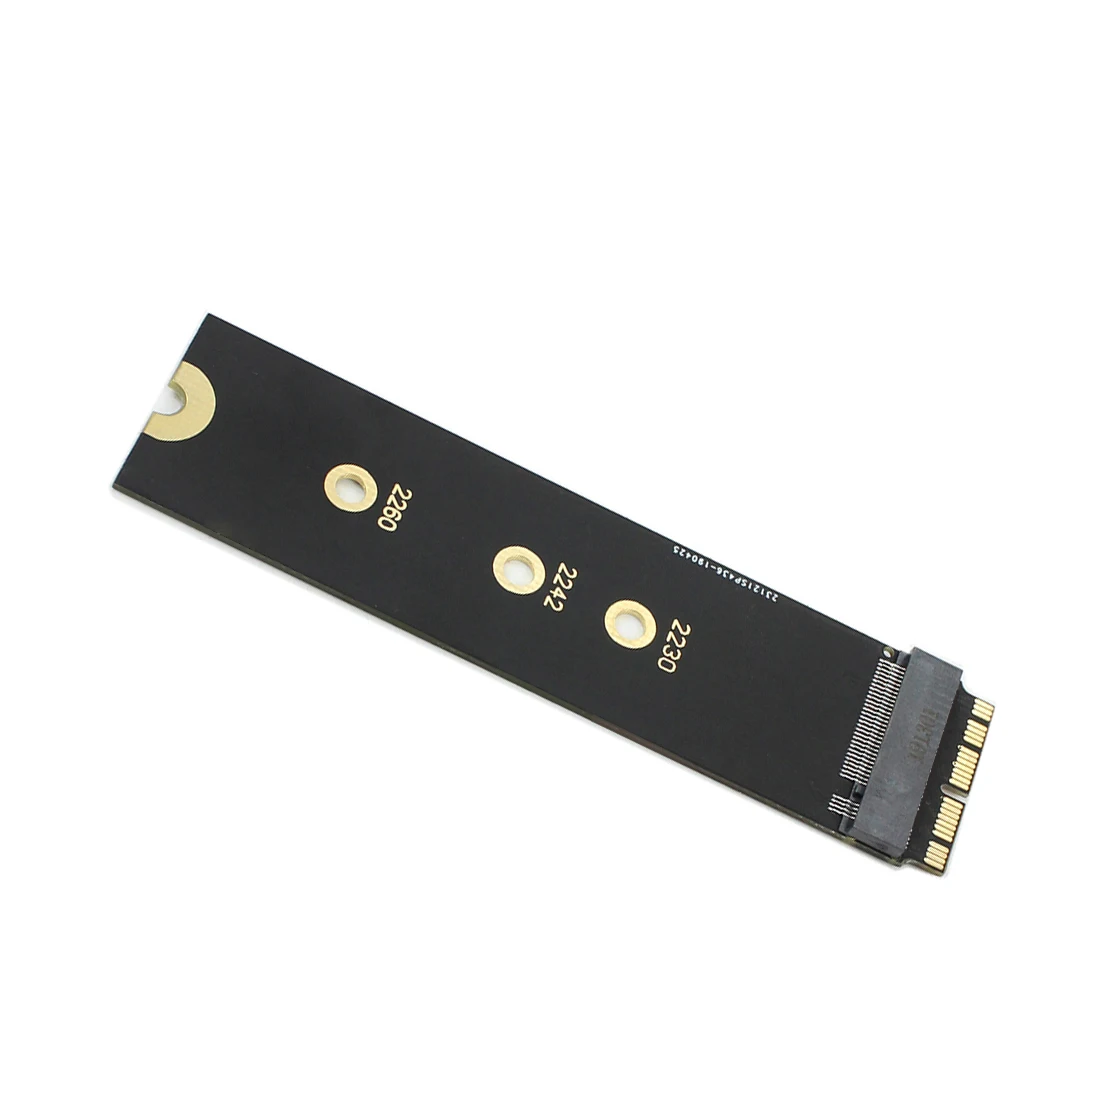 SSD адаптер карта NVMe PCIe M.2 NGFF на SSD для Macbook Air Pro 2013 A1465 A1398 SSD 2280 PCIE x4 для ноутбука Apple